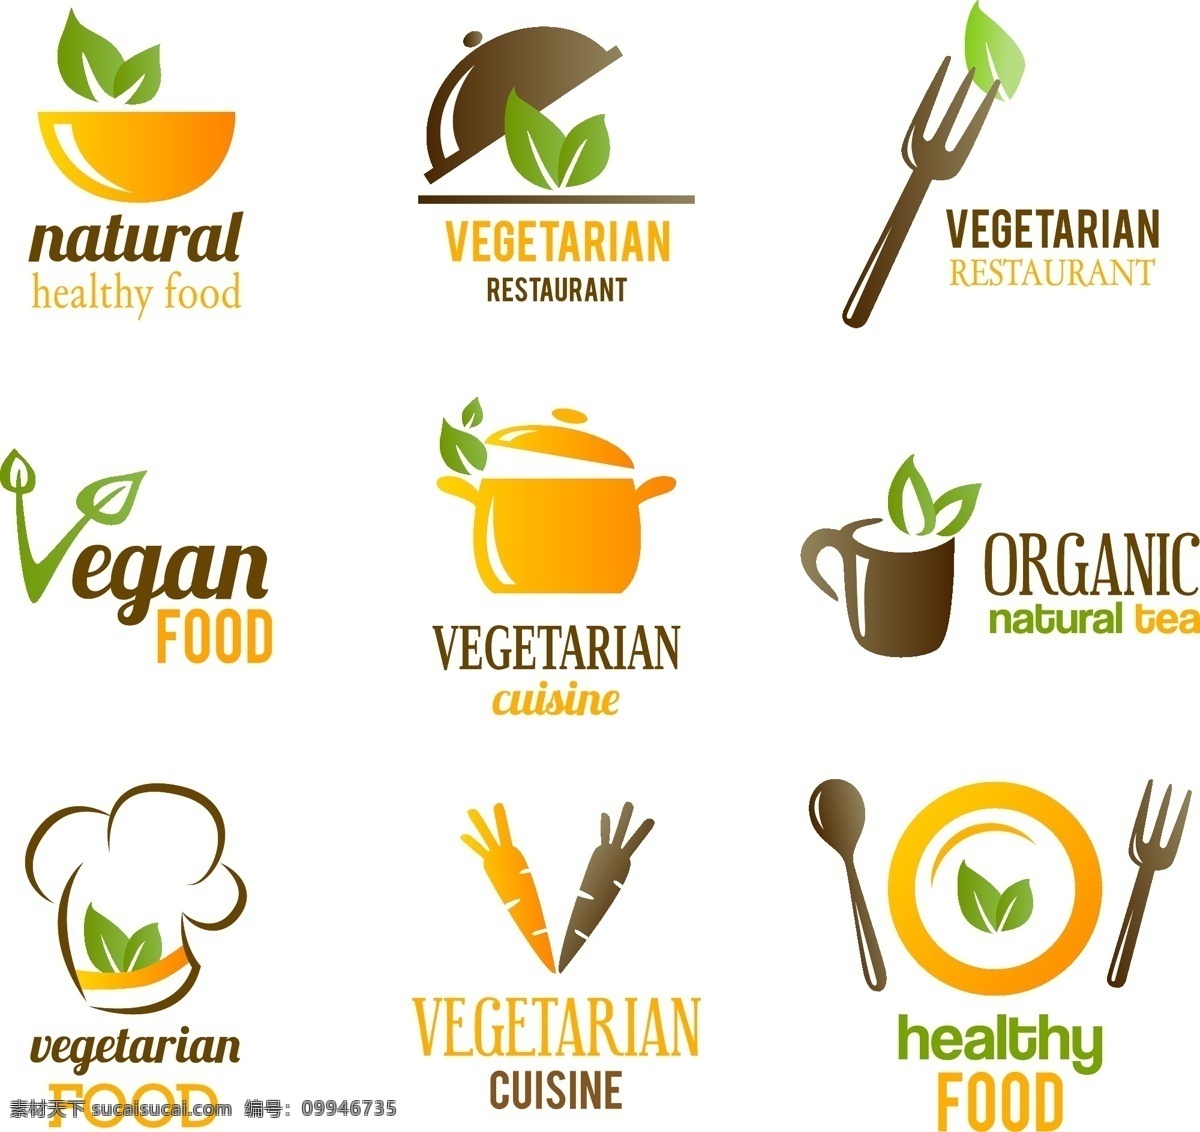 保健食品标签 食品标签 蔬菜 绿叶 胡萝卜 有机食品 新鲜饭菜 咖啡 条幅 横幅 矢量 标签图标 图标 标志 标签 logo 小图标 标识标志图标